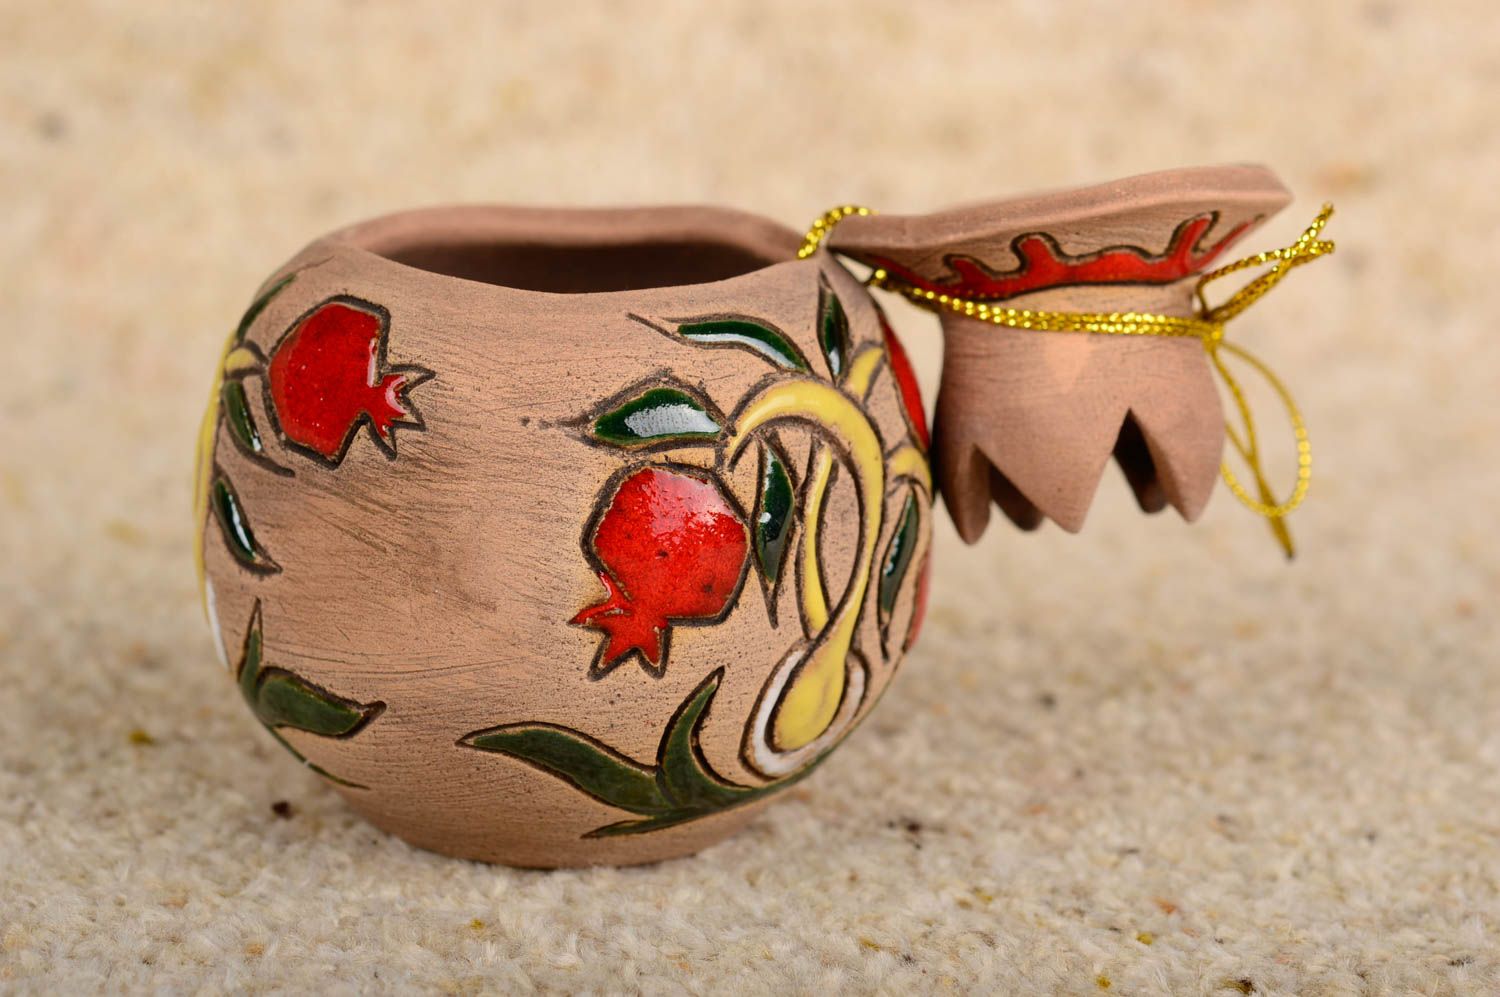 Шкатулка ручной работы керамический сувенир авторская керамика гранатовое древо фото 2